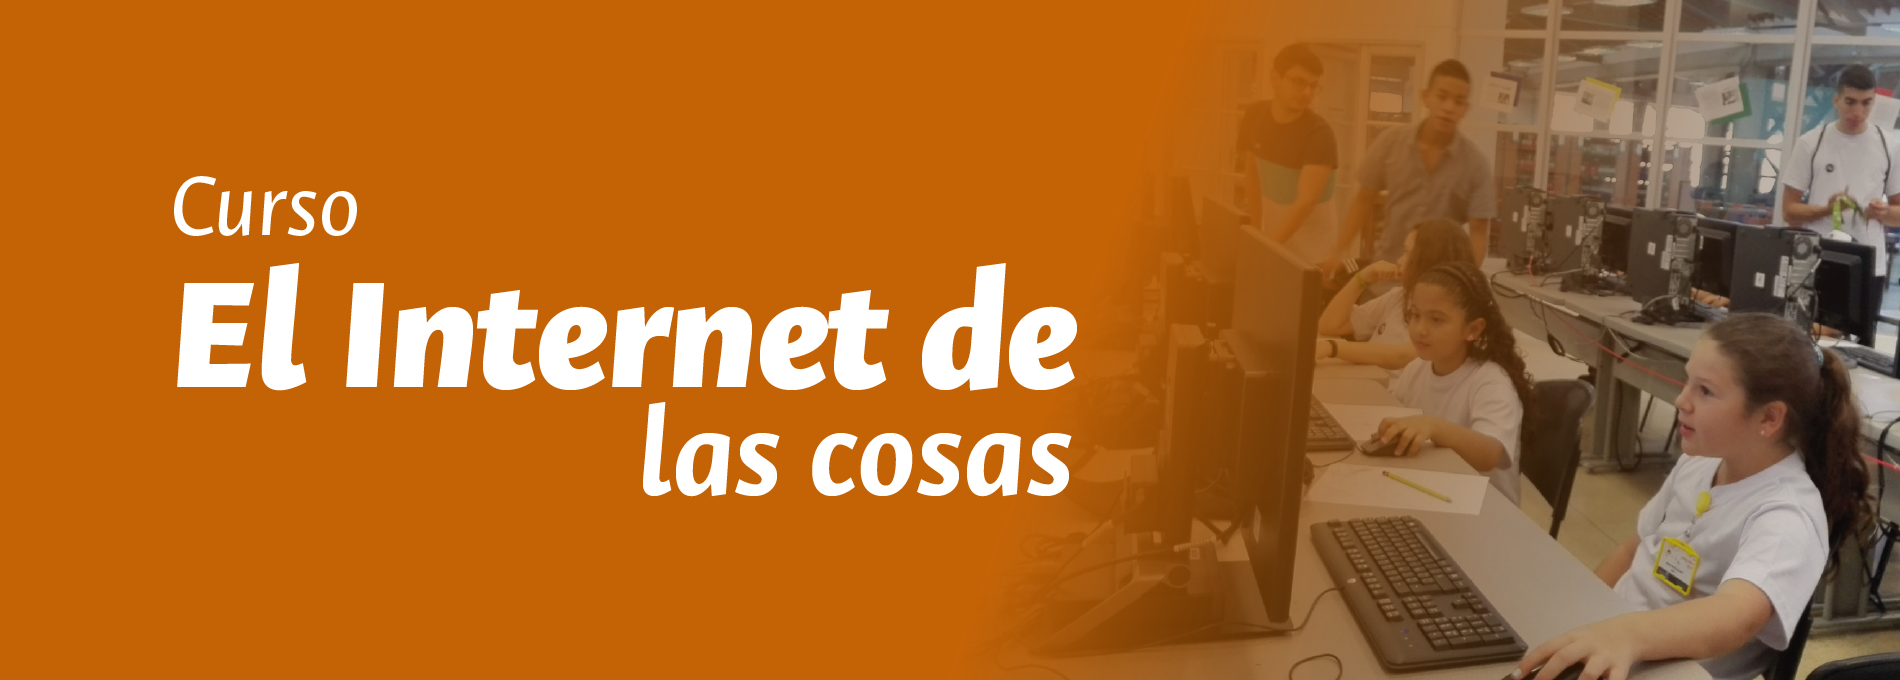 CURSO-INTERNET-DE-LAS-COSAS_1_Mesa_de_trabajo_1.jpg